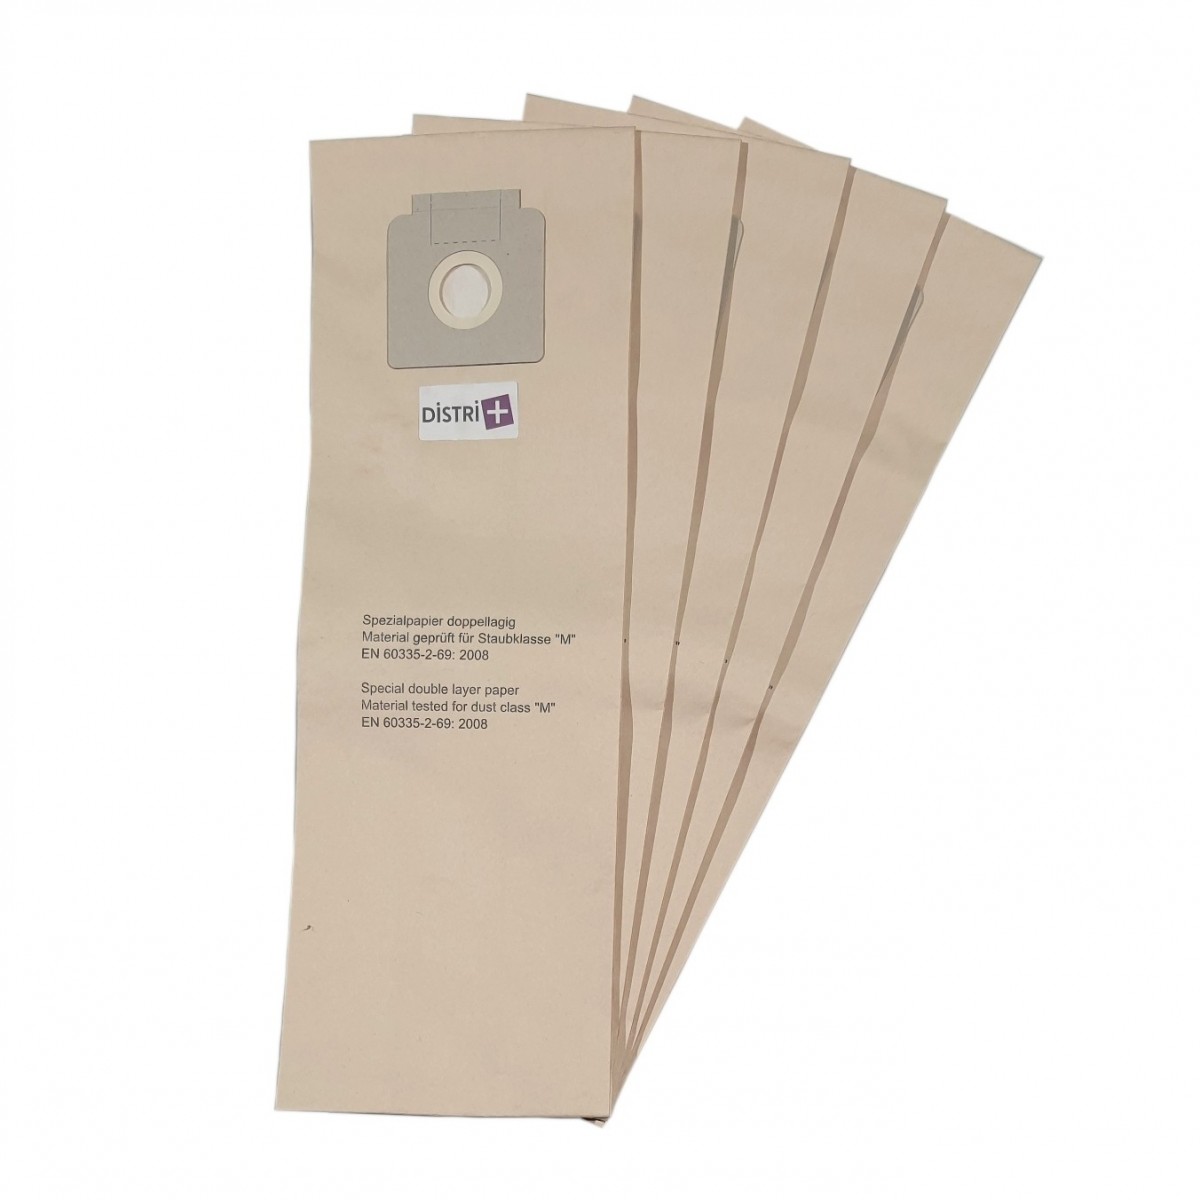 Sac aspirateur cpmpatible Karcher - pochette de 5 sacs papier